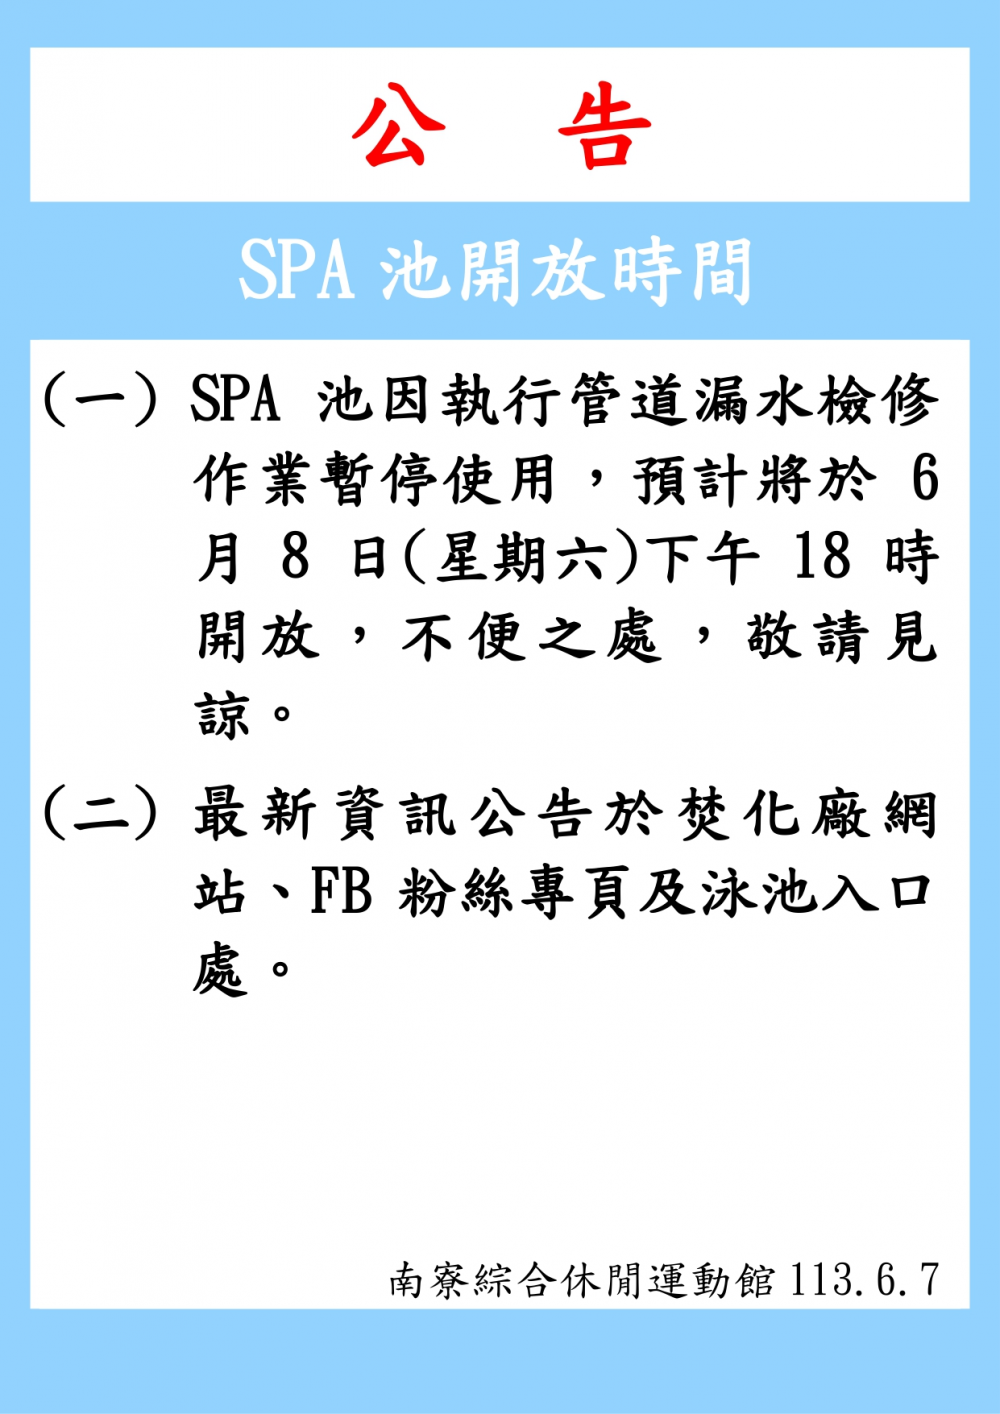 南寮綜合休閒運動館公告-SPA池預計將於6月8日(星期六)下午18時開放